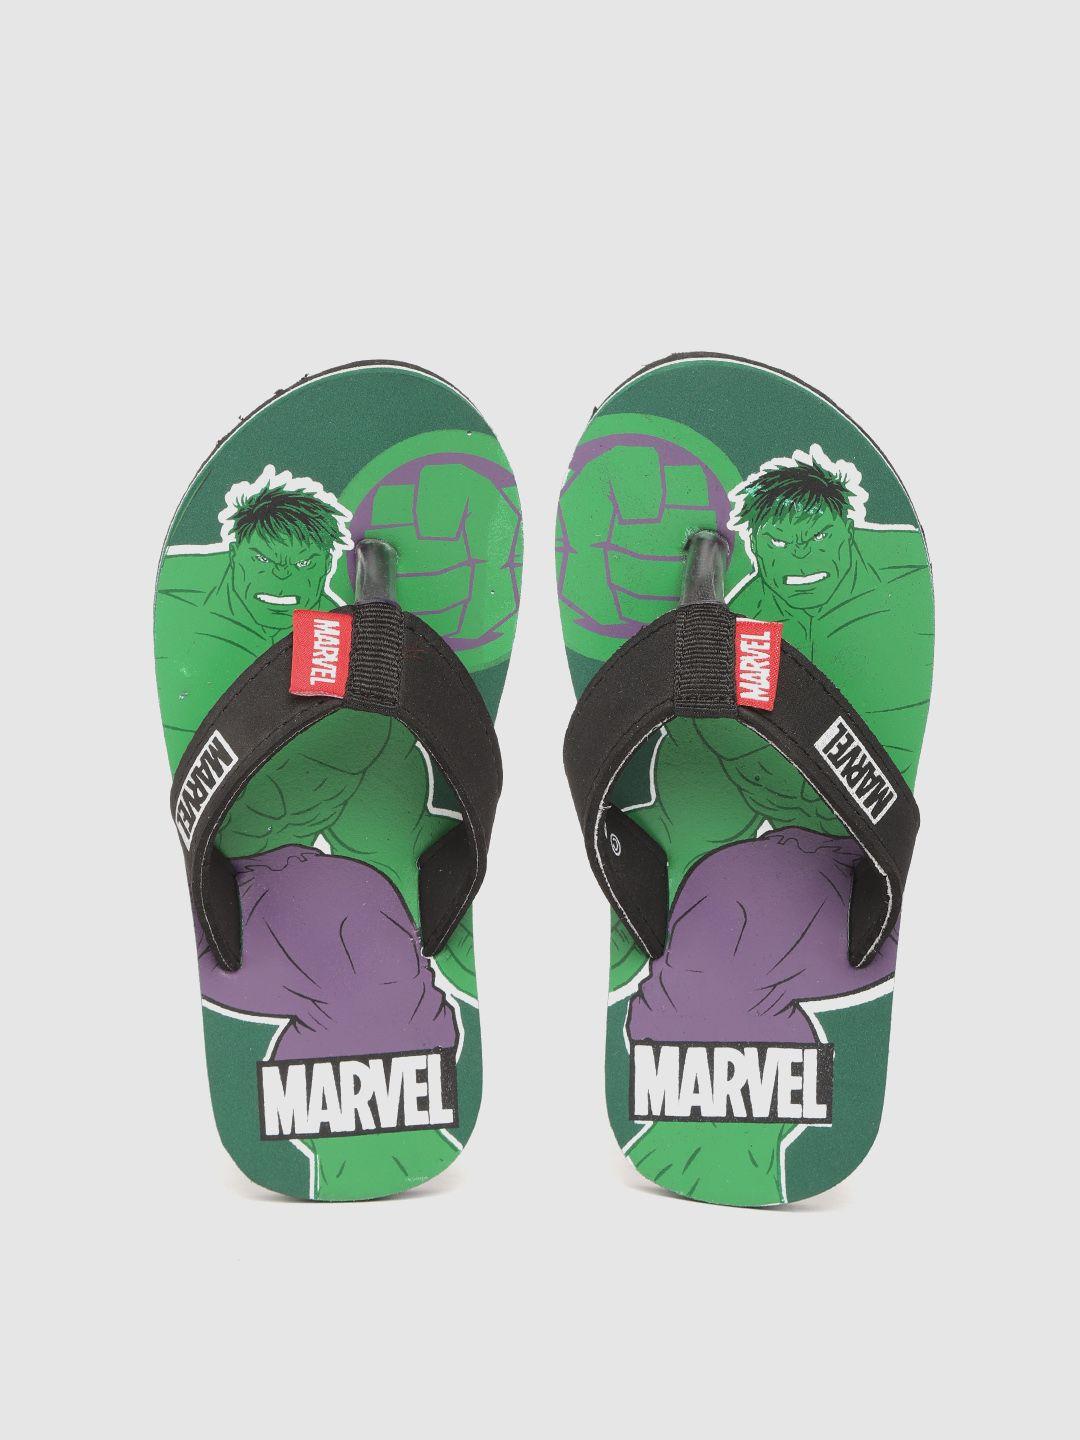 toothless Boys Green & Black Printed Rubber Marvel Avengers Thong Flip-Flops